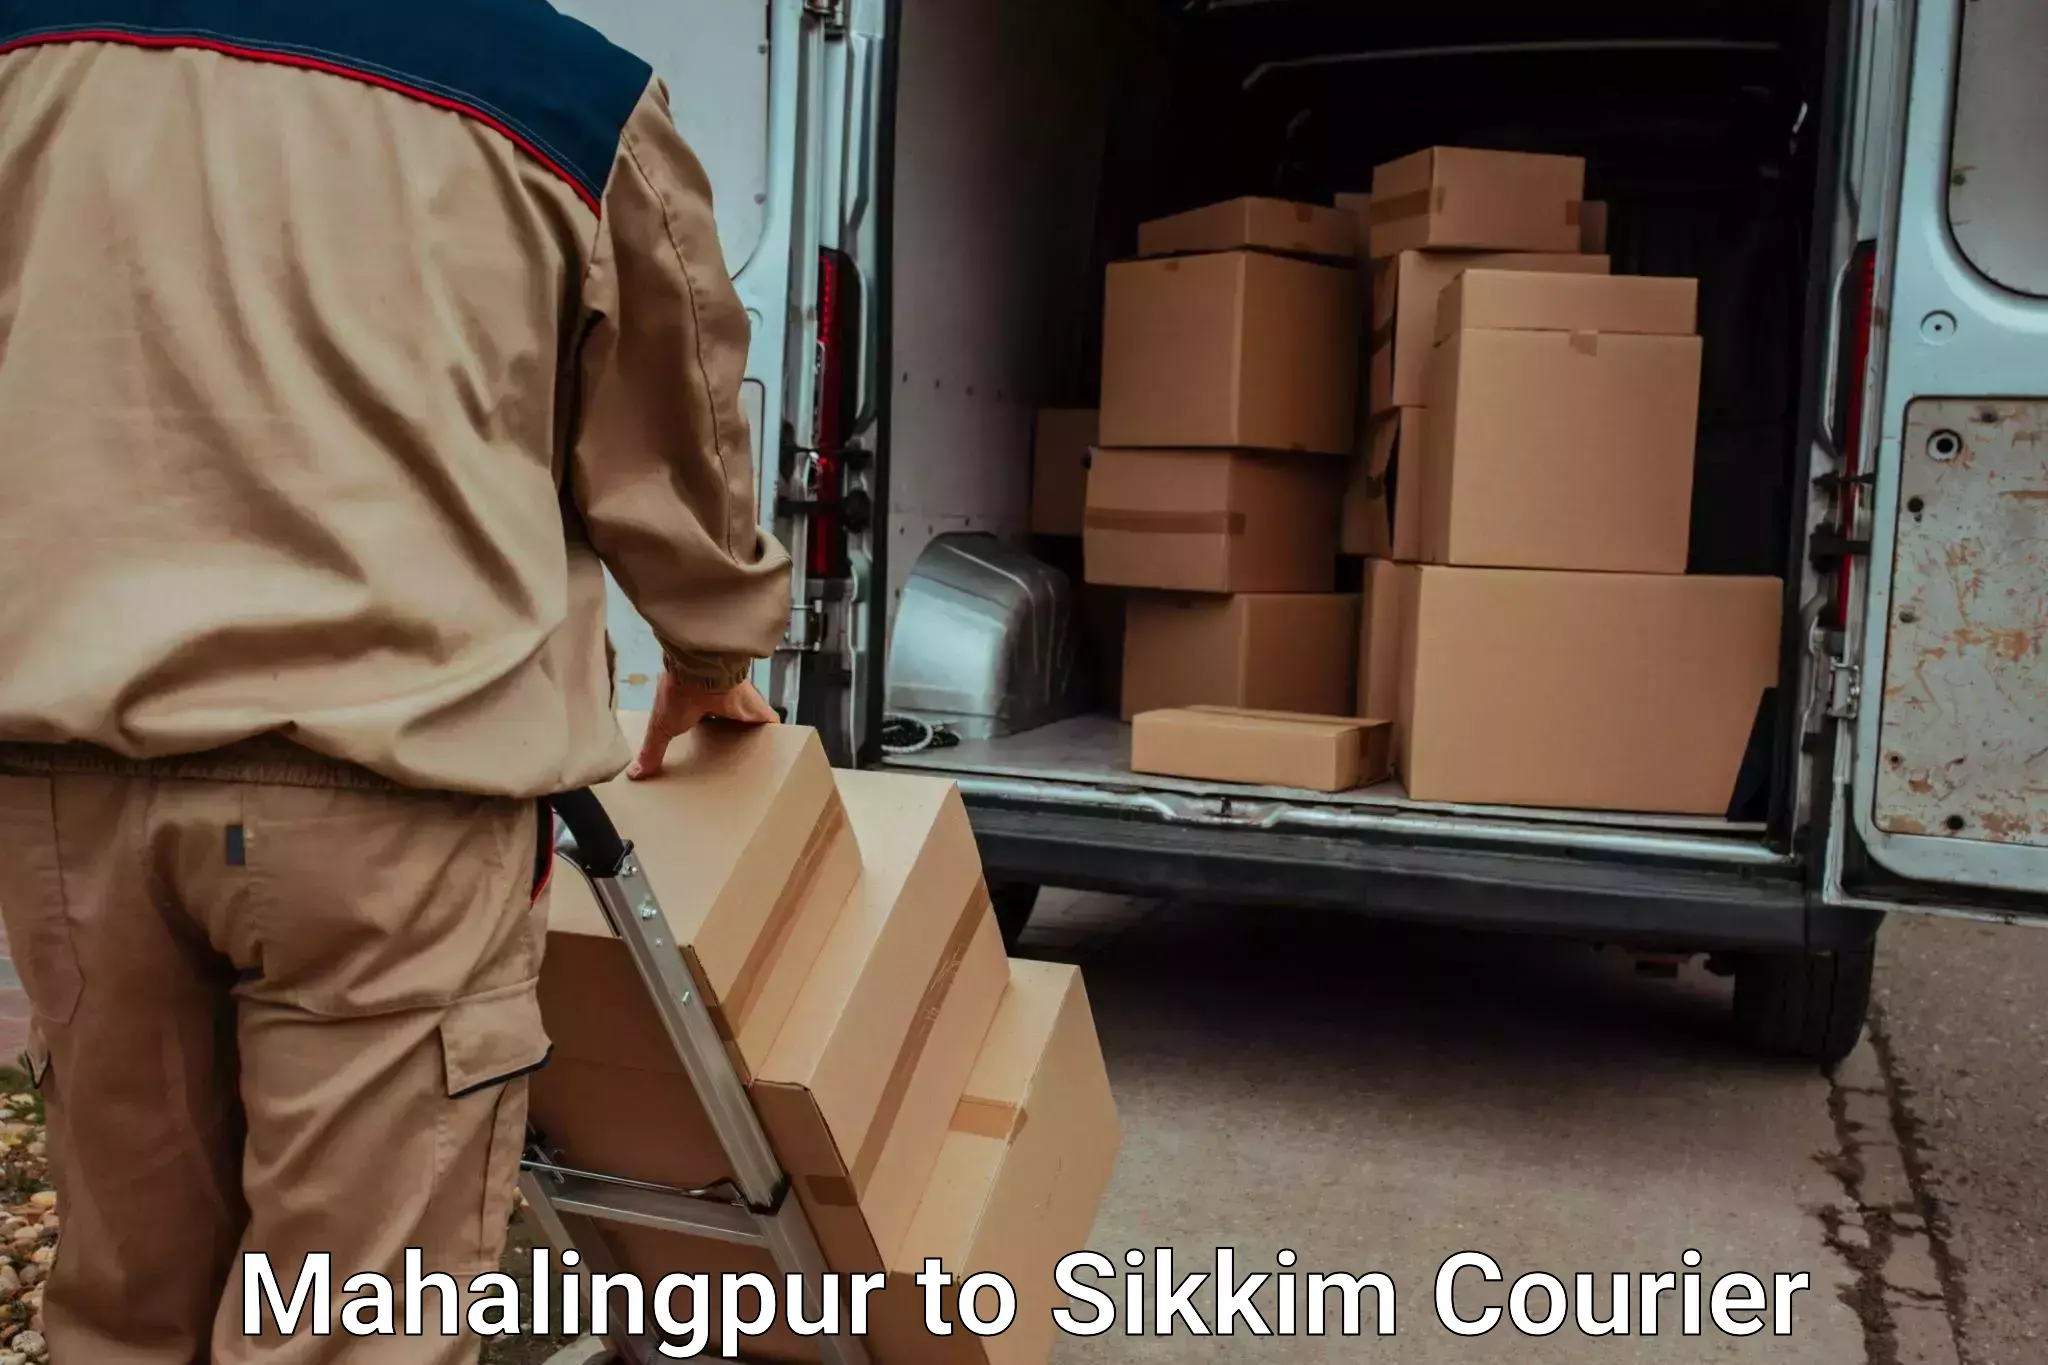 Baggage shipping quotes Mahalingpur to Jorethang